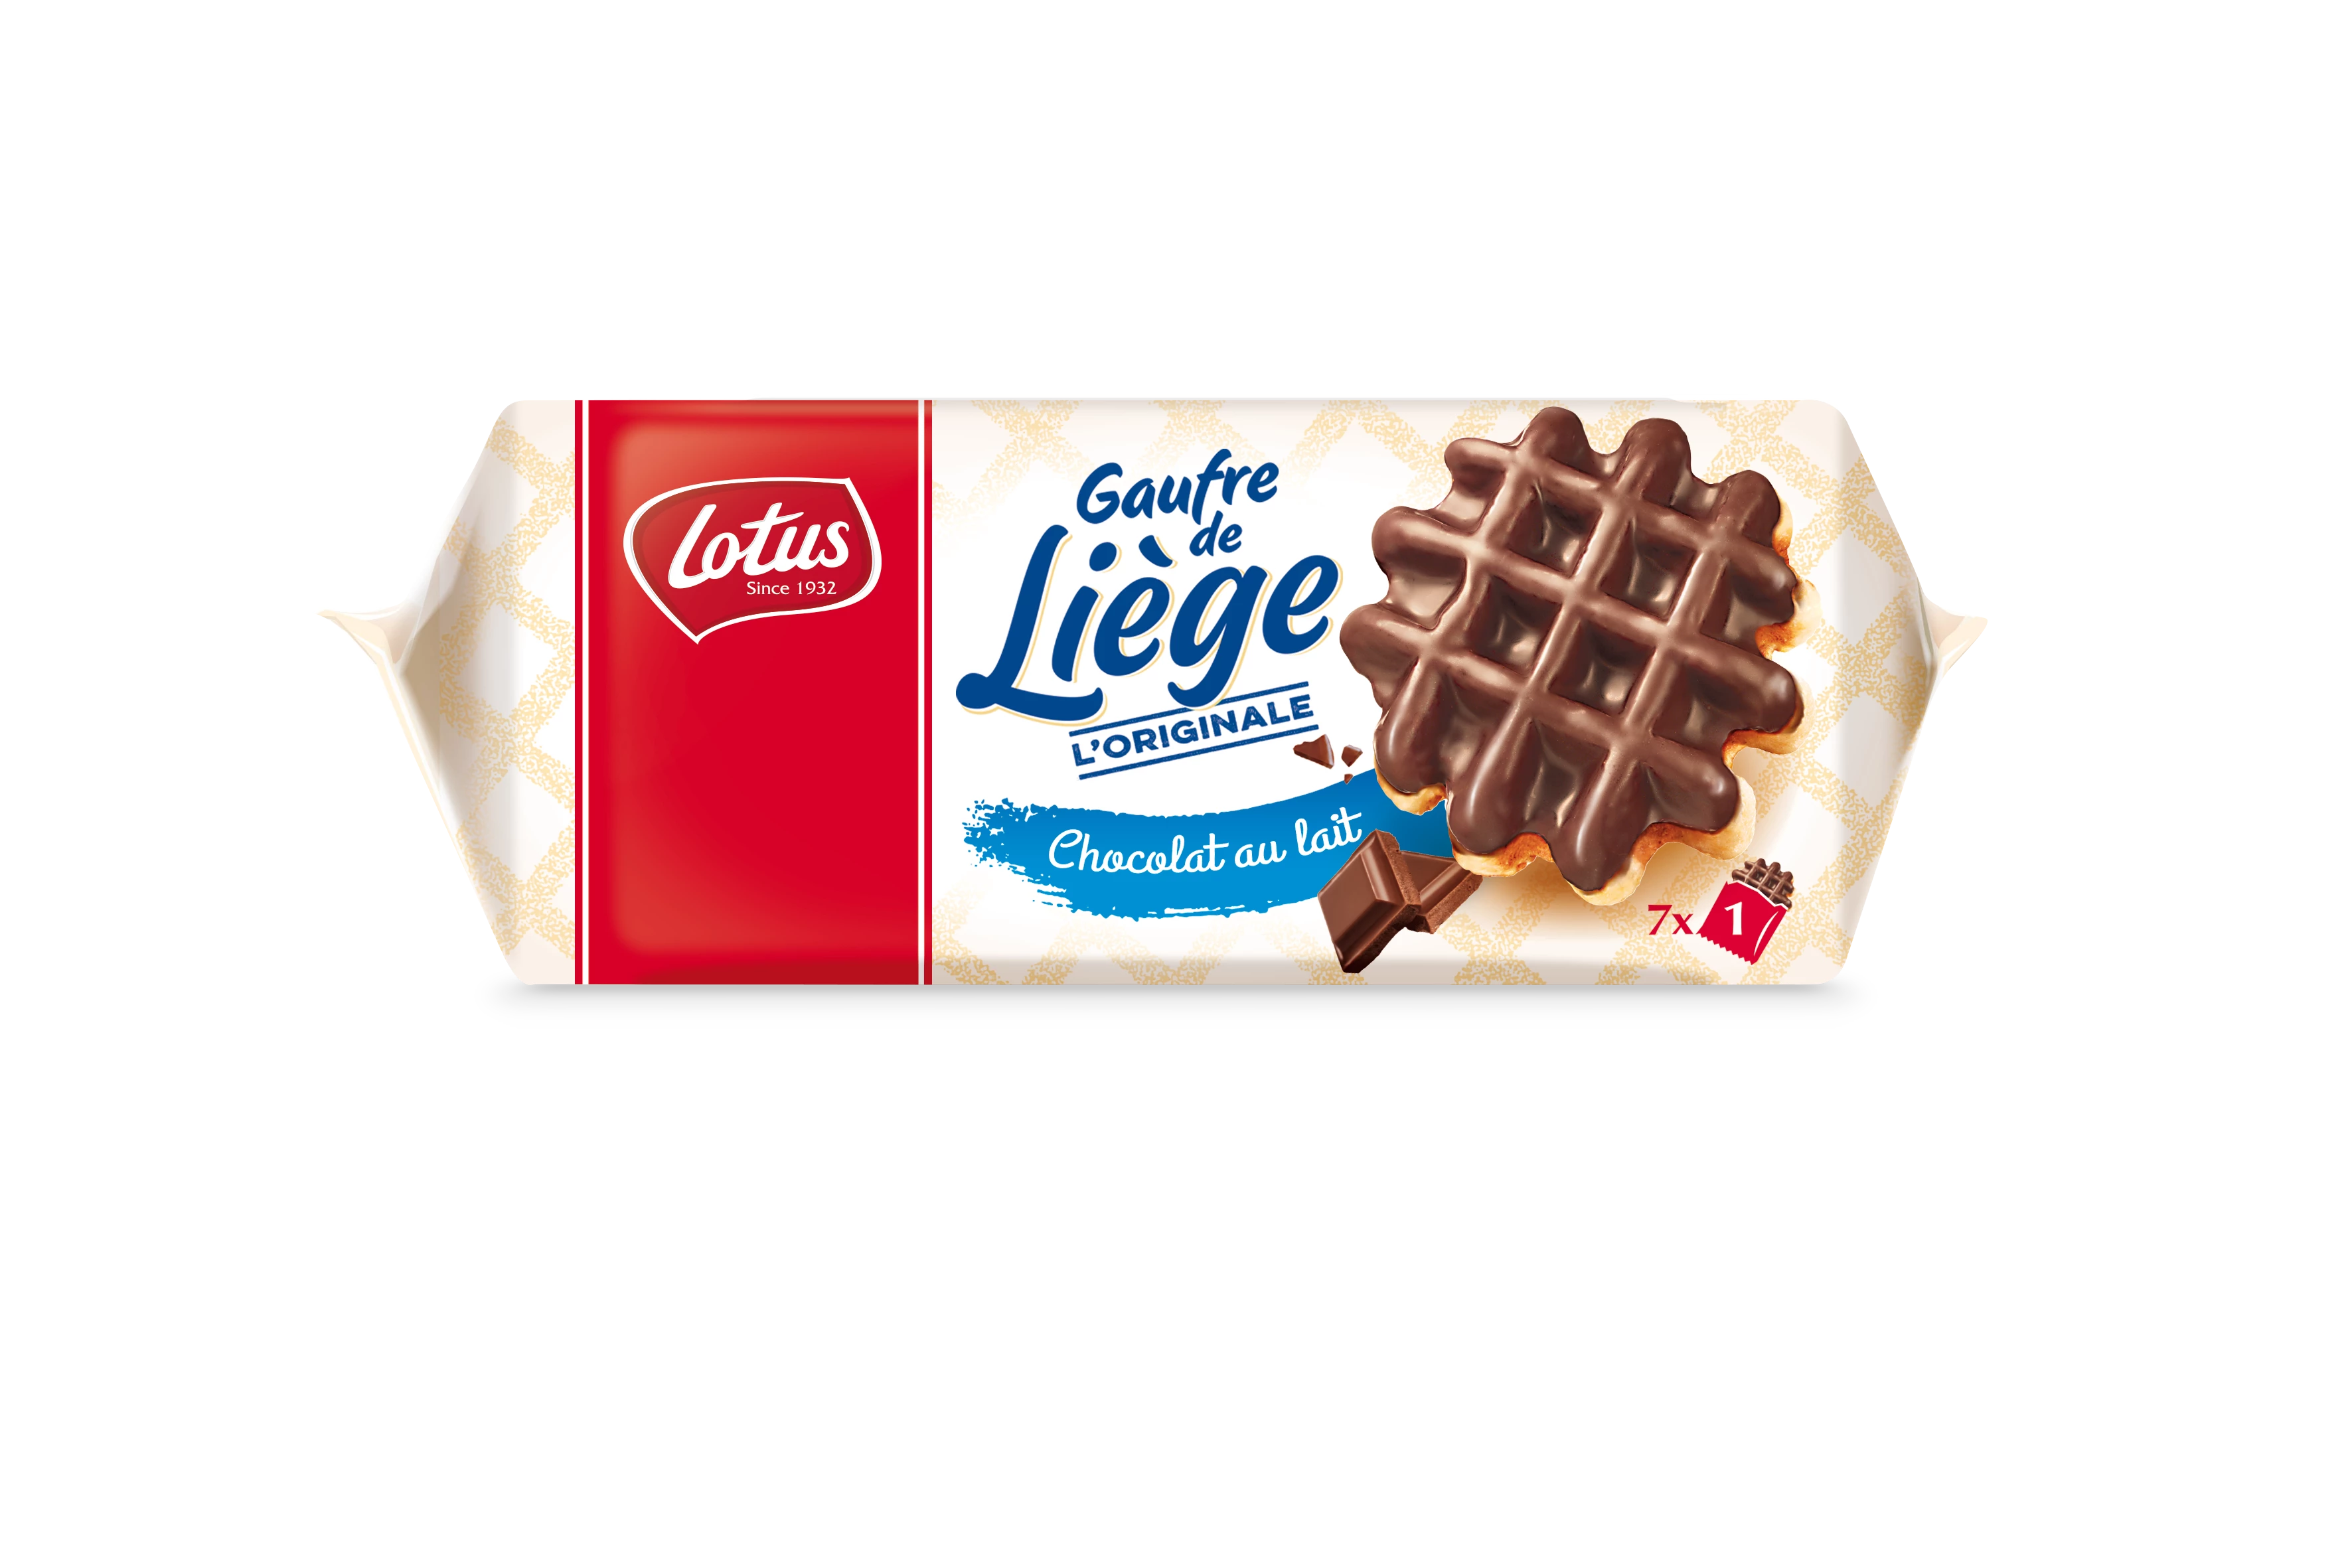 Льежские вафли с молочным шоколадом, 7 шт., 360г - LOTUS